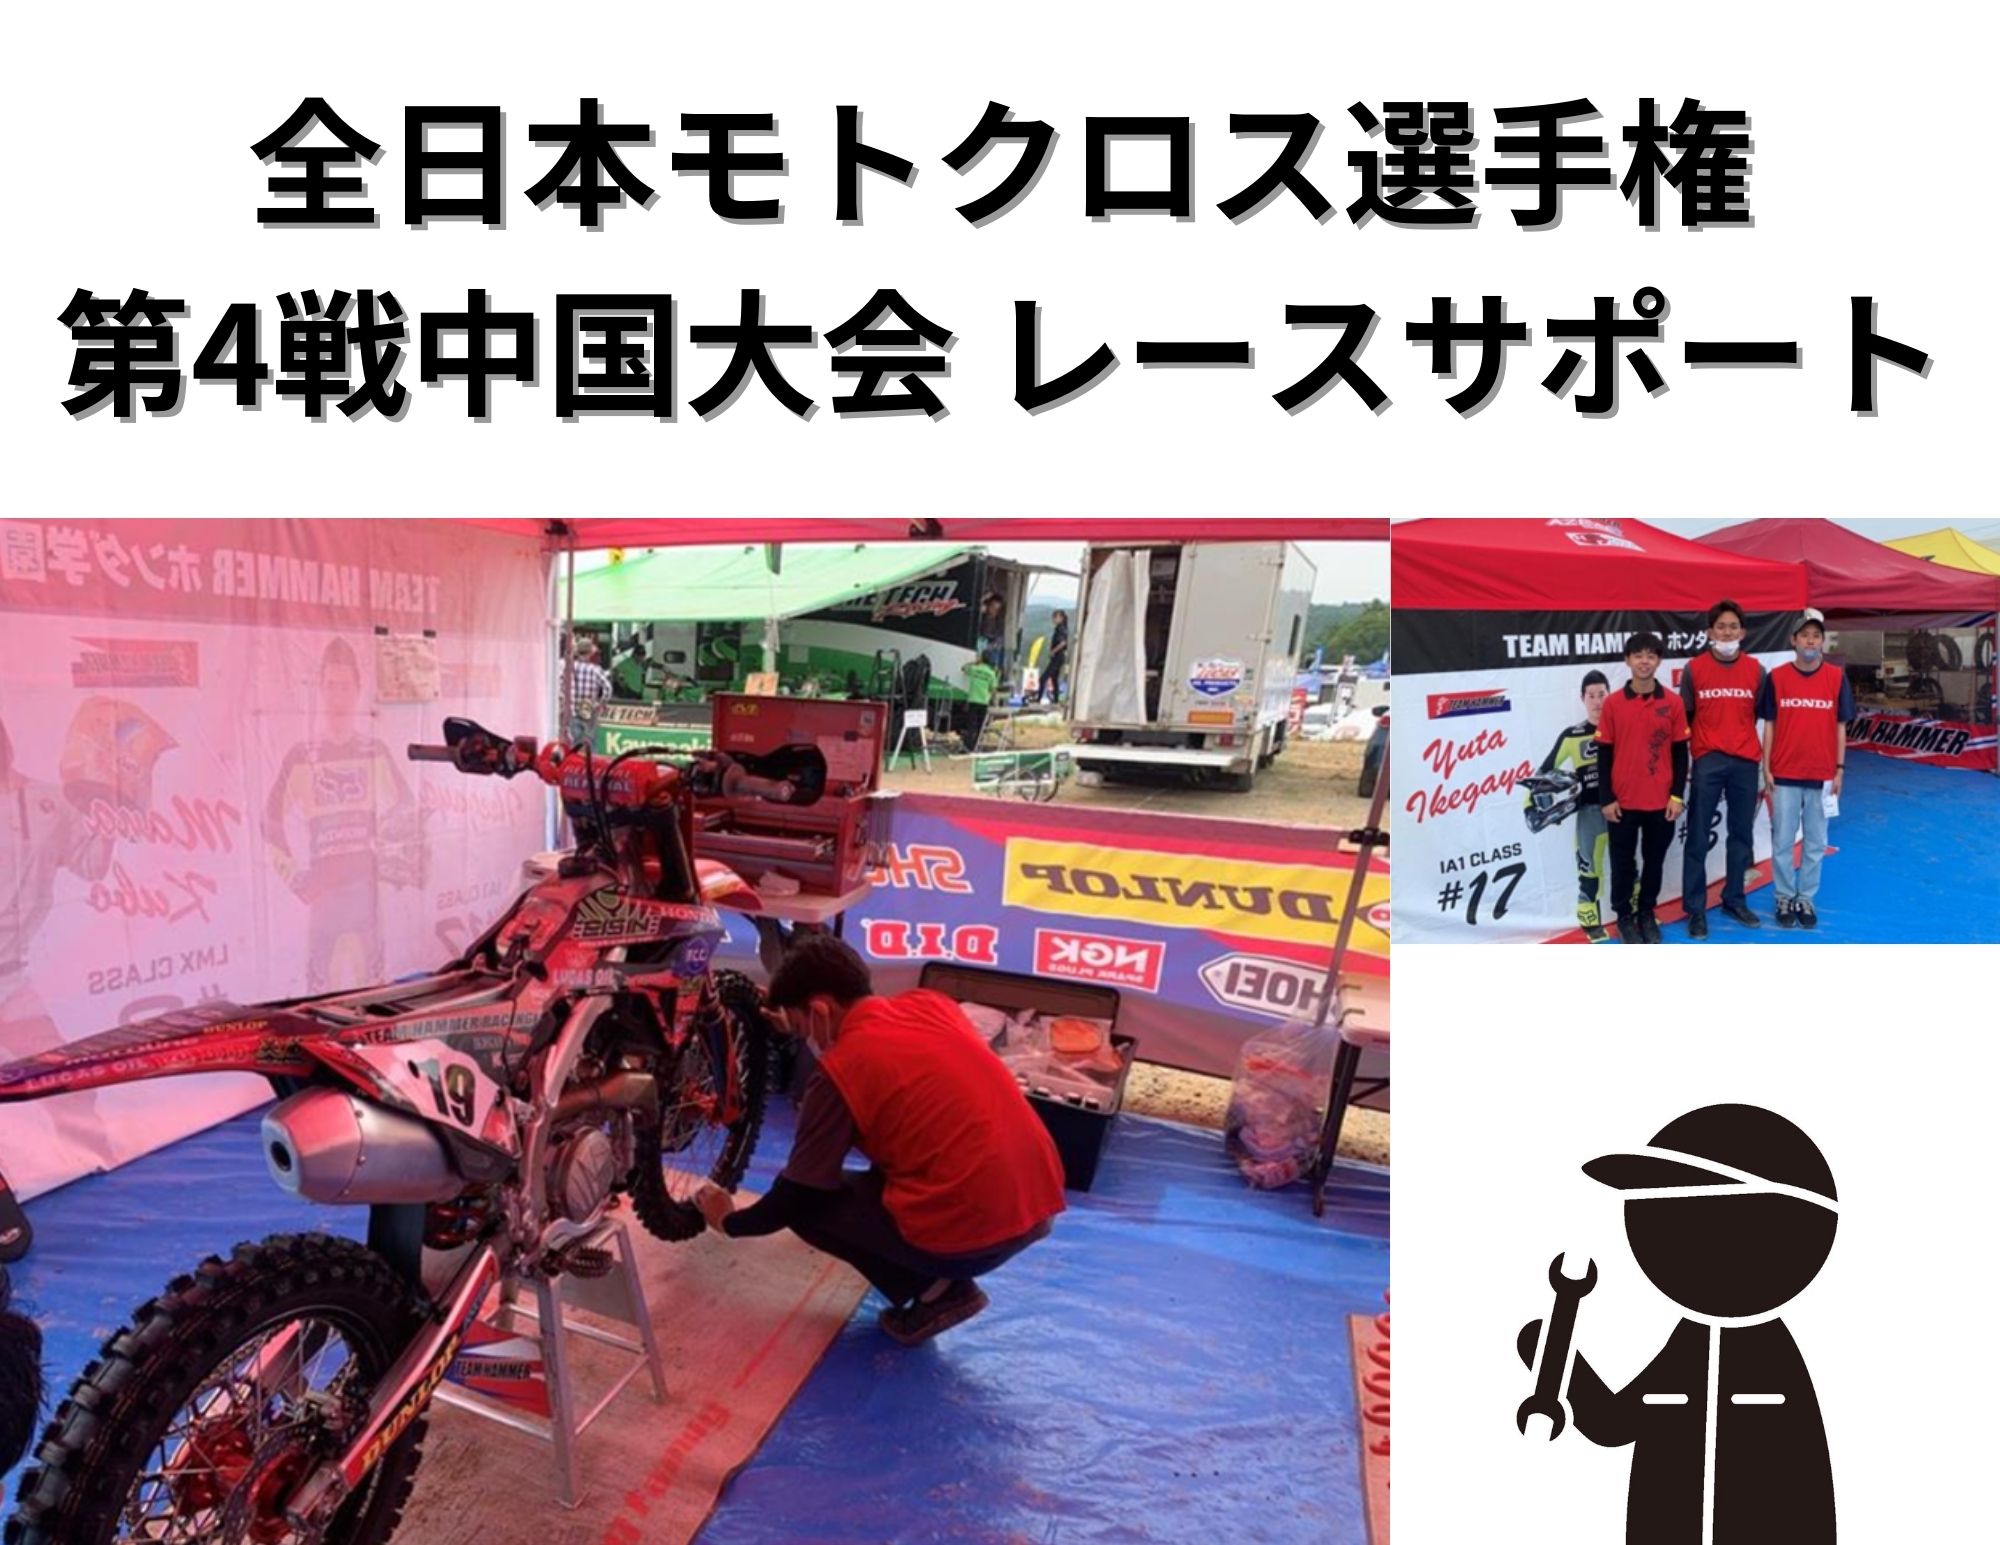 【同好会活動】全日本モトクロス選手権 第4戦レースサポート（メカニック）